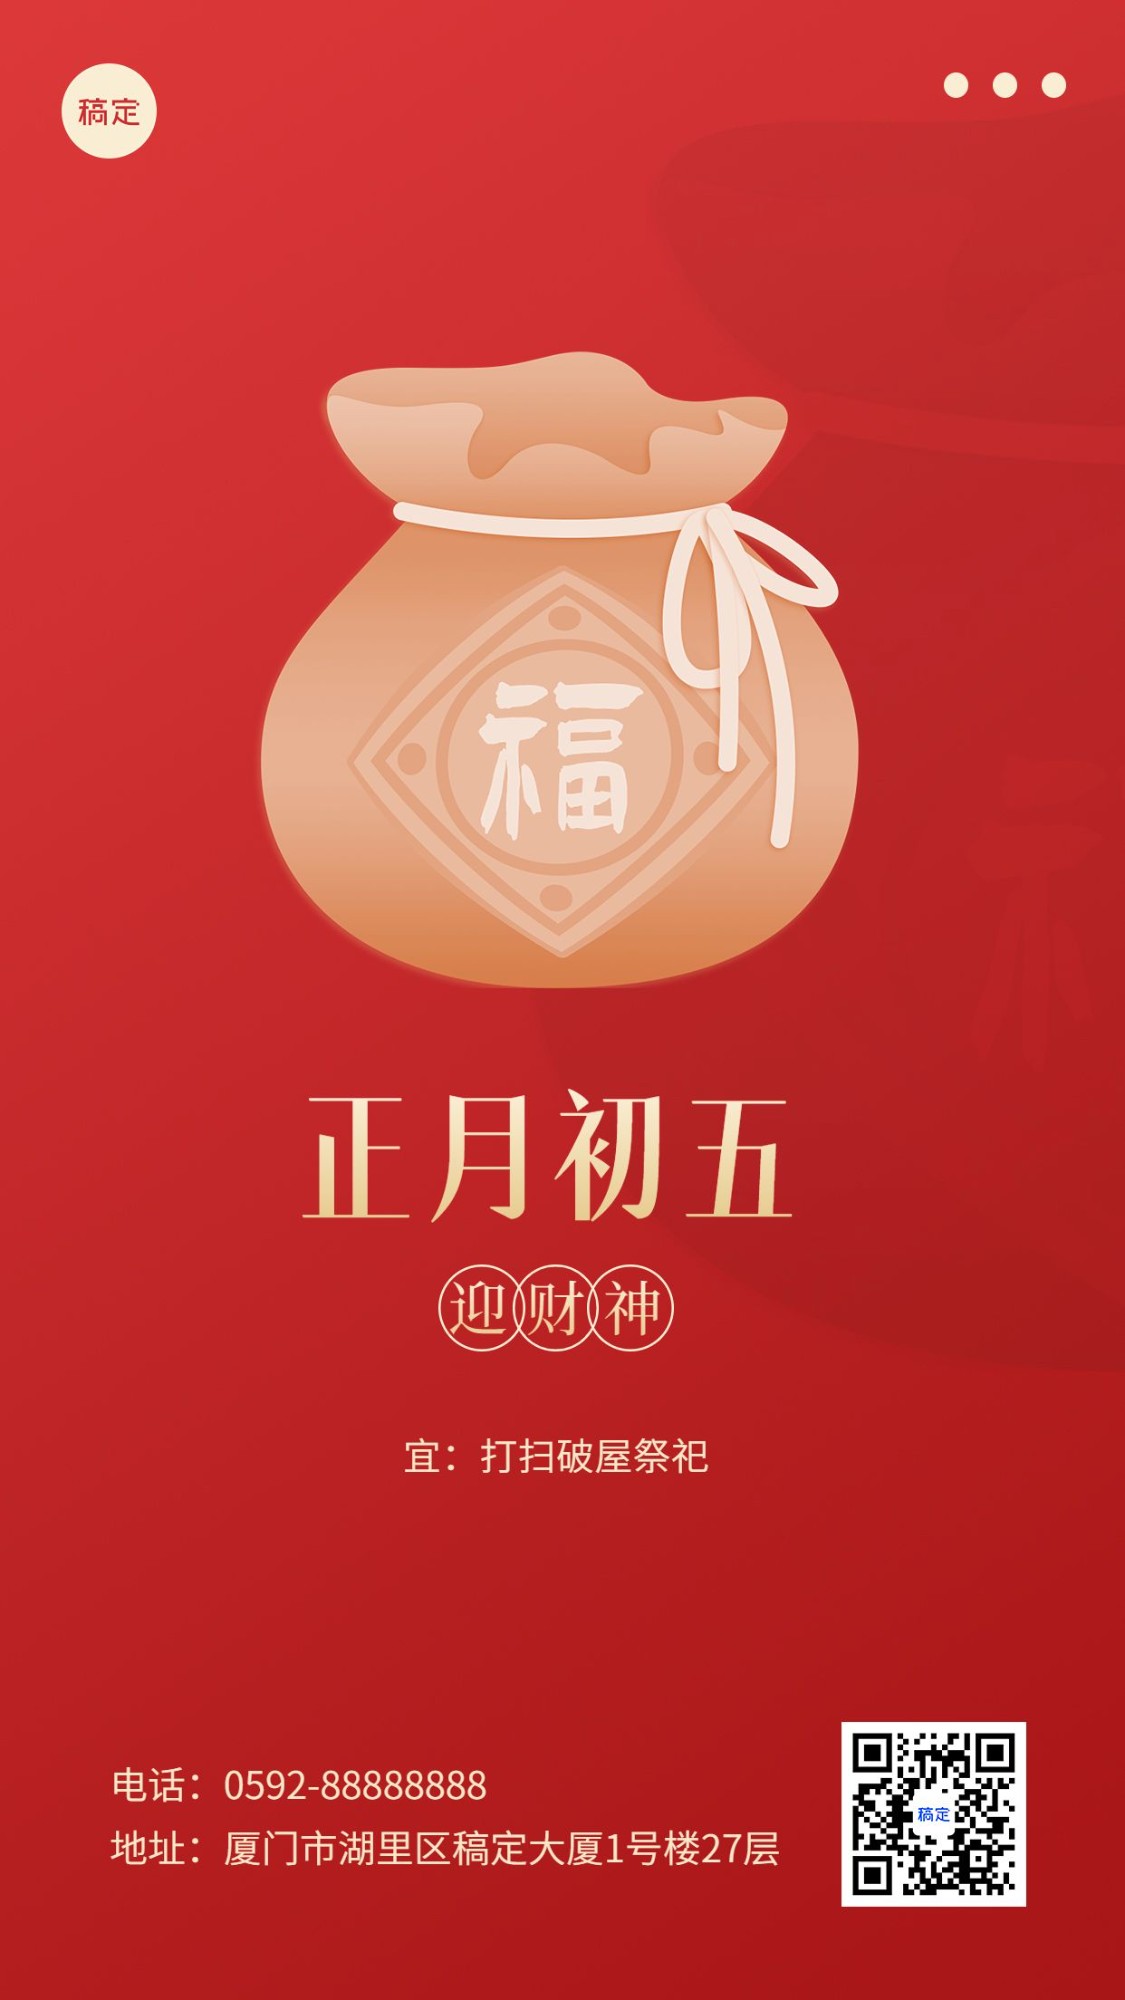 春节新年祝福正月初五简约排版套系手机海报